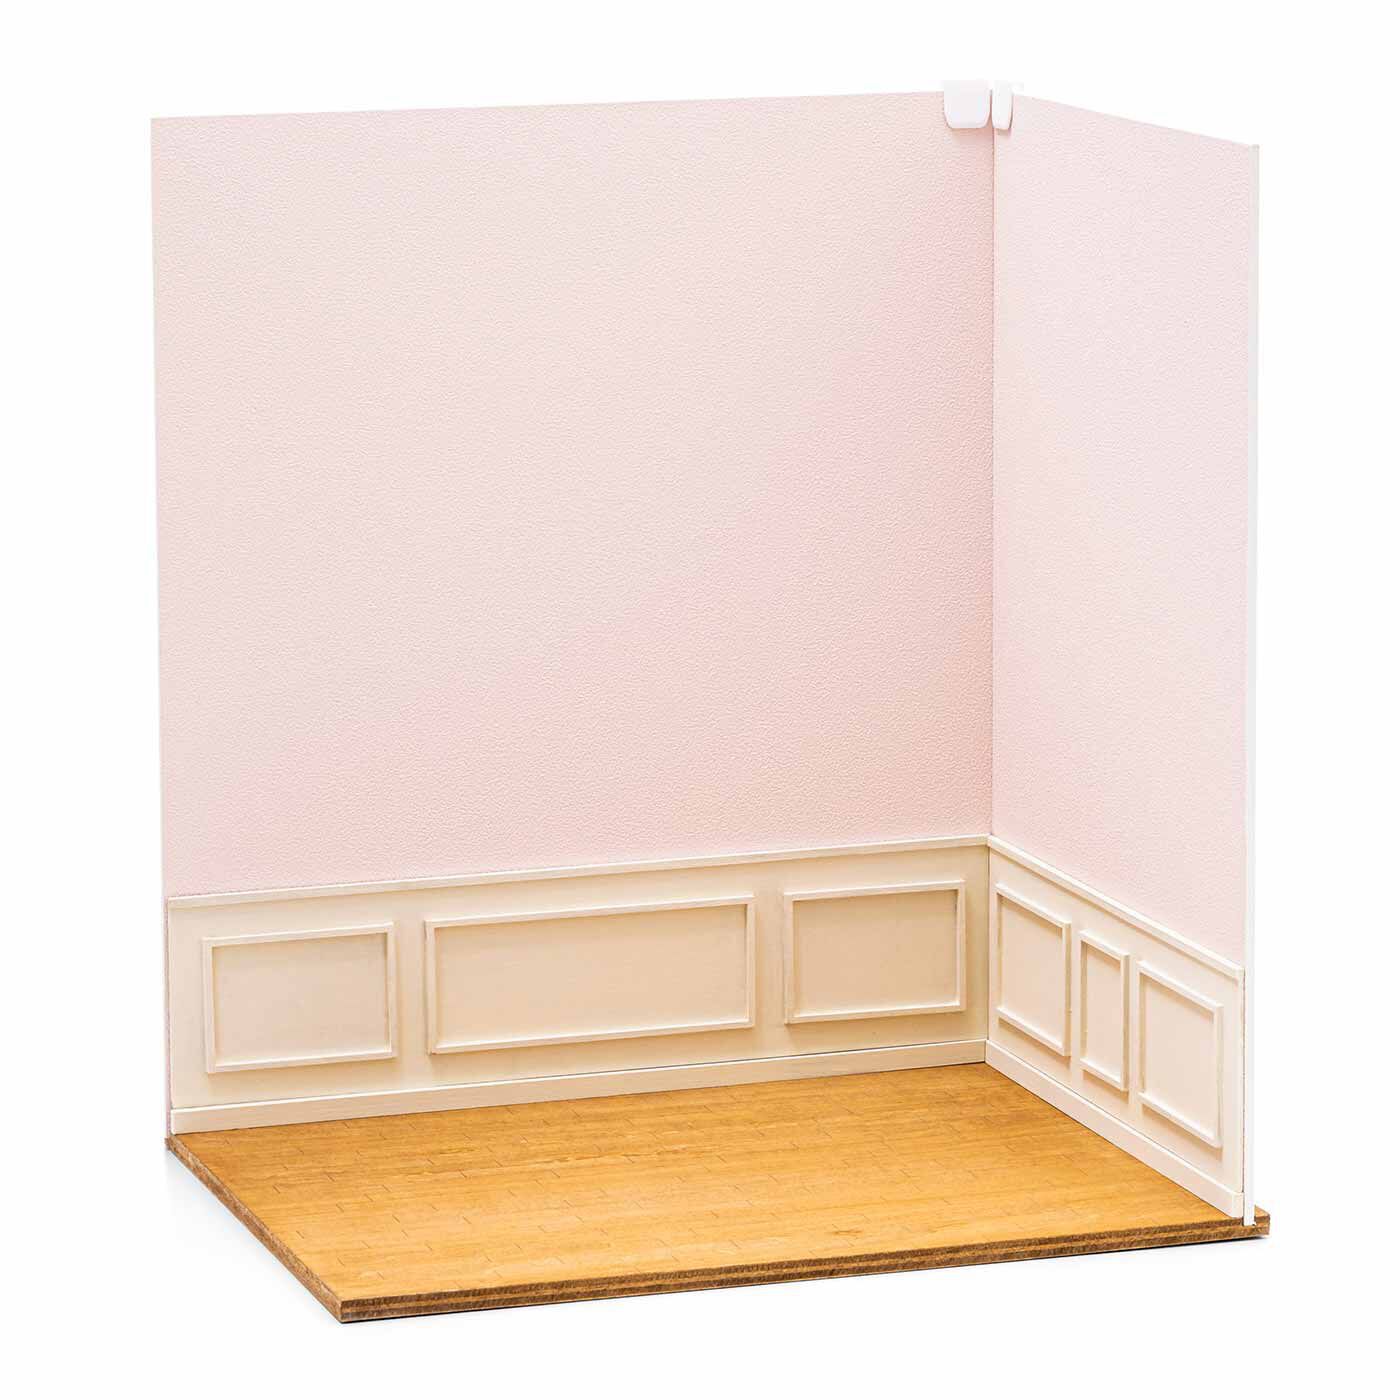 クチュリエ|1/6サイズドールに合う撮影ブース|床板の溝に壁を差し込み、上部をコーナークリップで固定すればブース完成。 壁はピンクと白の便利な2-WAY仕様。(ピンク）